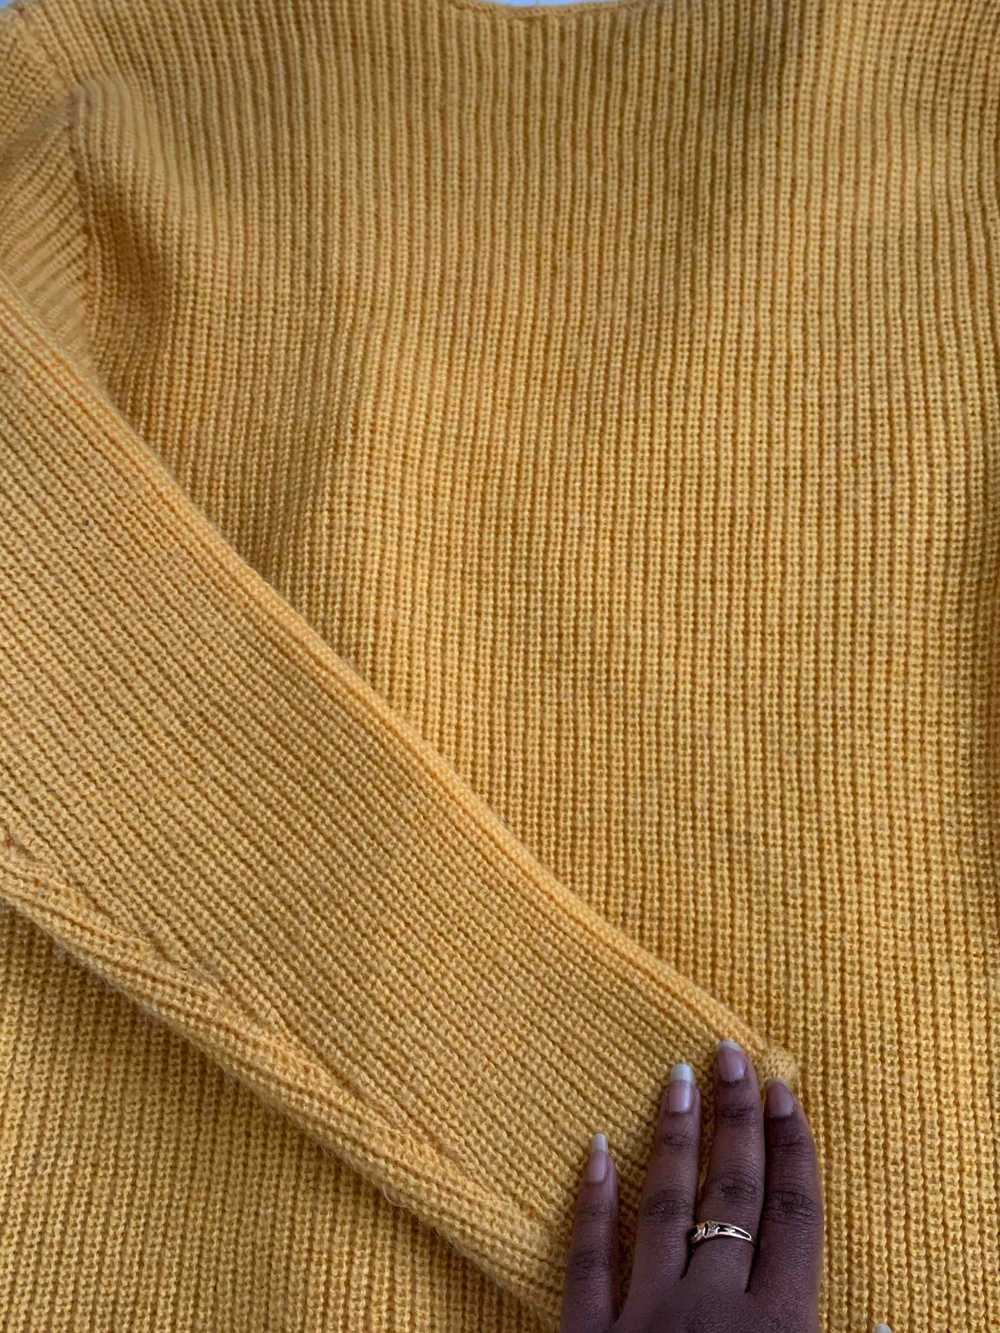 Cardigan en crochet - Cardigan en crochet jaune - image 2